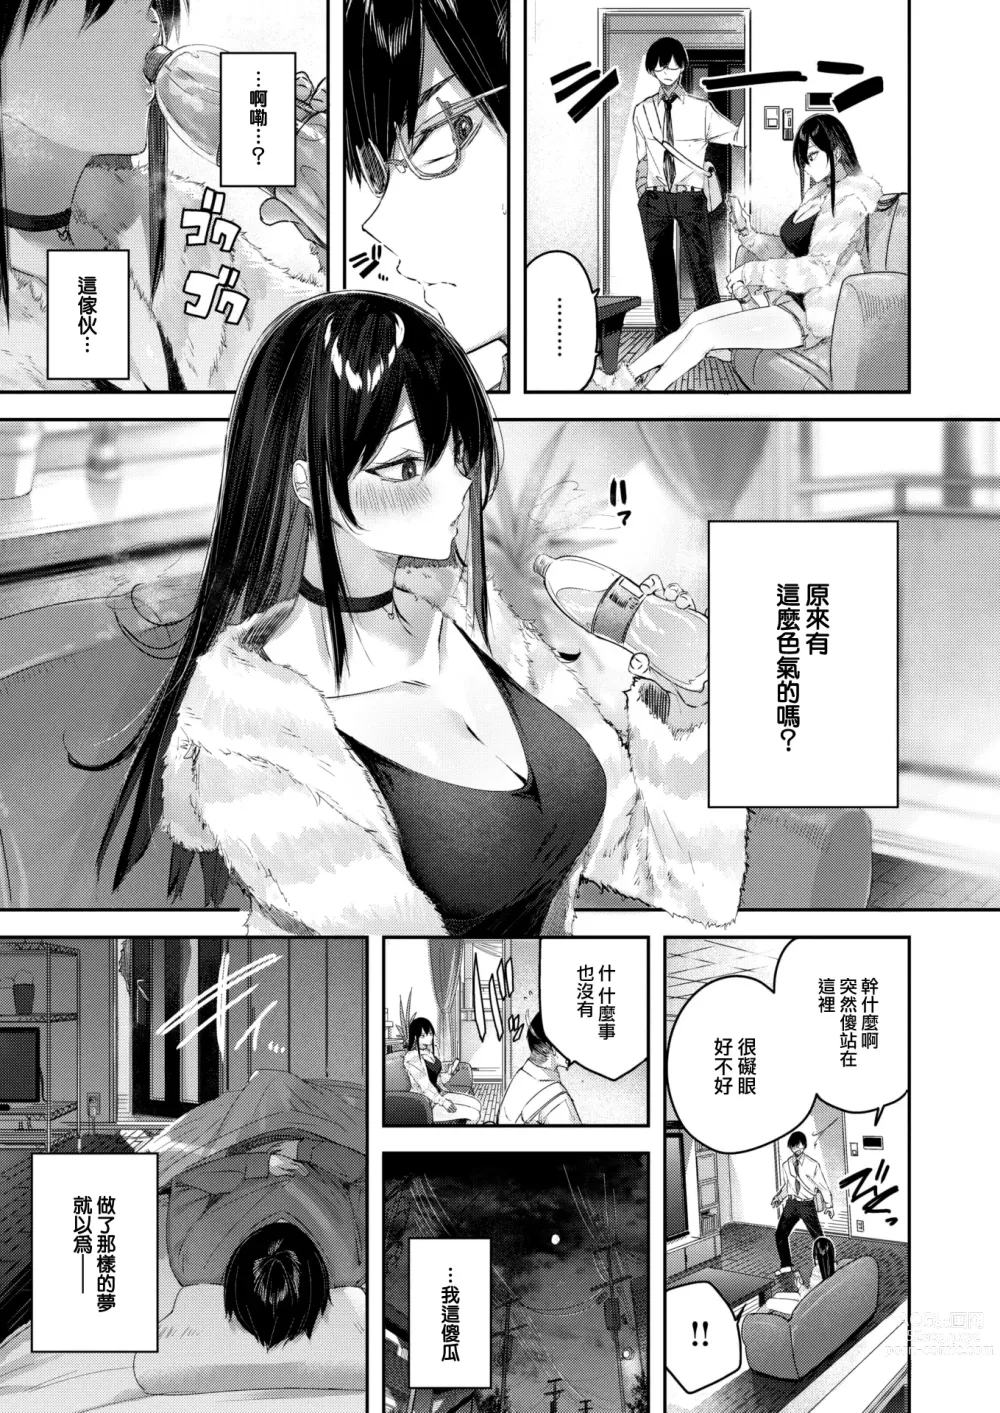 Page 8 of manga Imouto Pudding